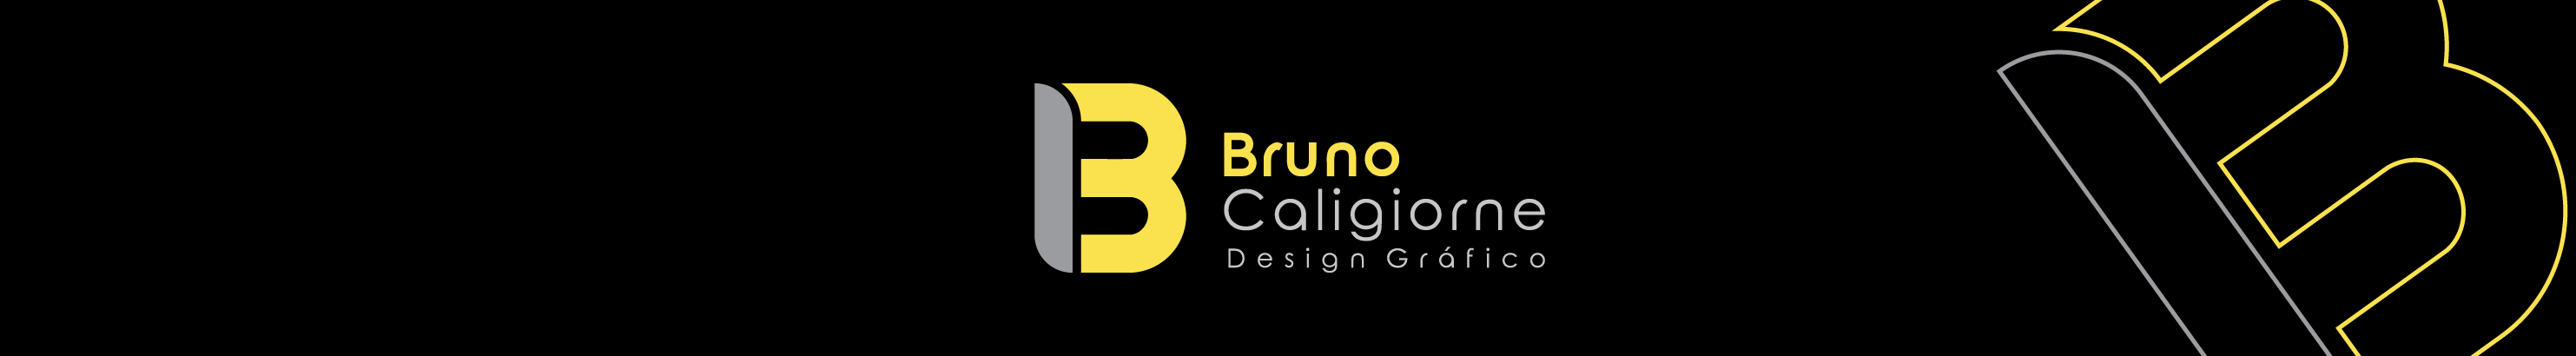 Bruno Caligiorne's profile banner